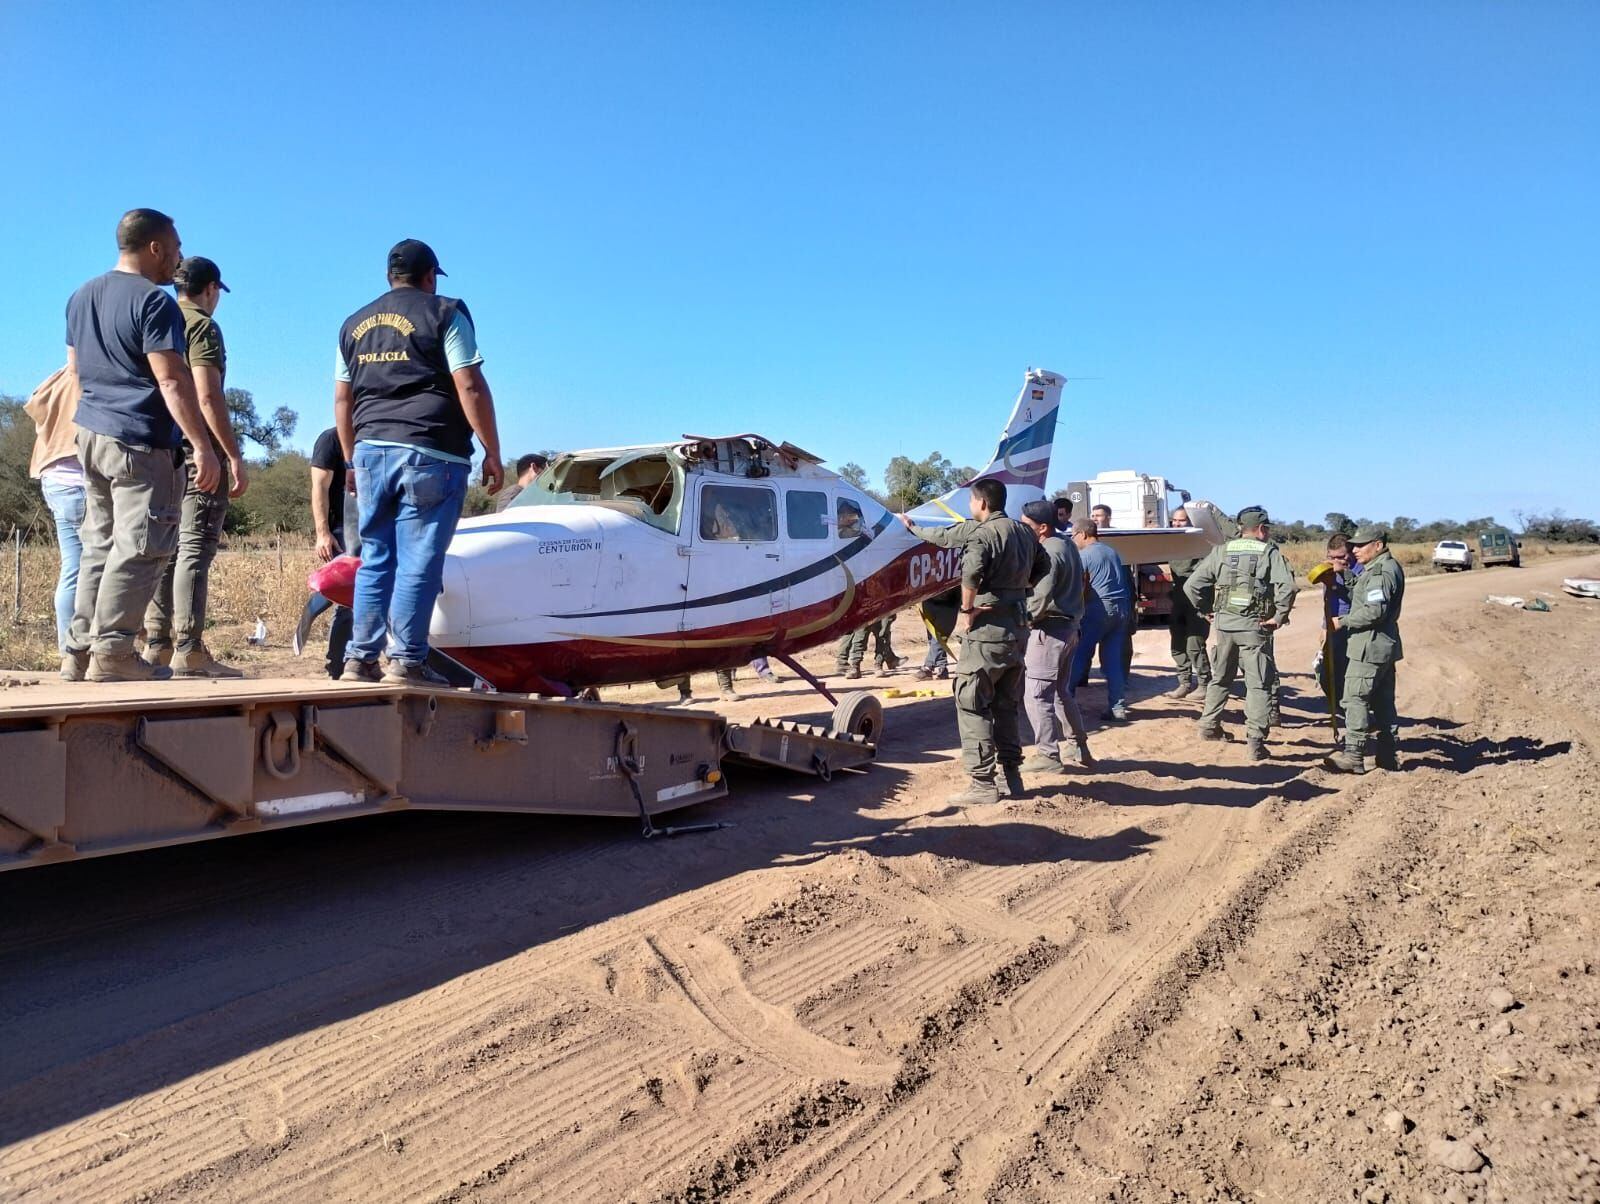 El vehículo aéreo fue robado en Bolivia antes de ingresar en terreno nacional